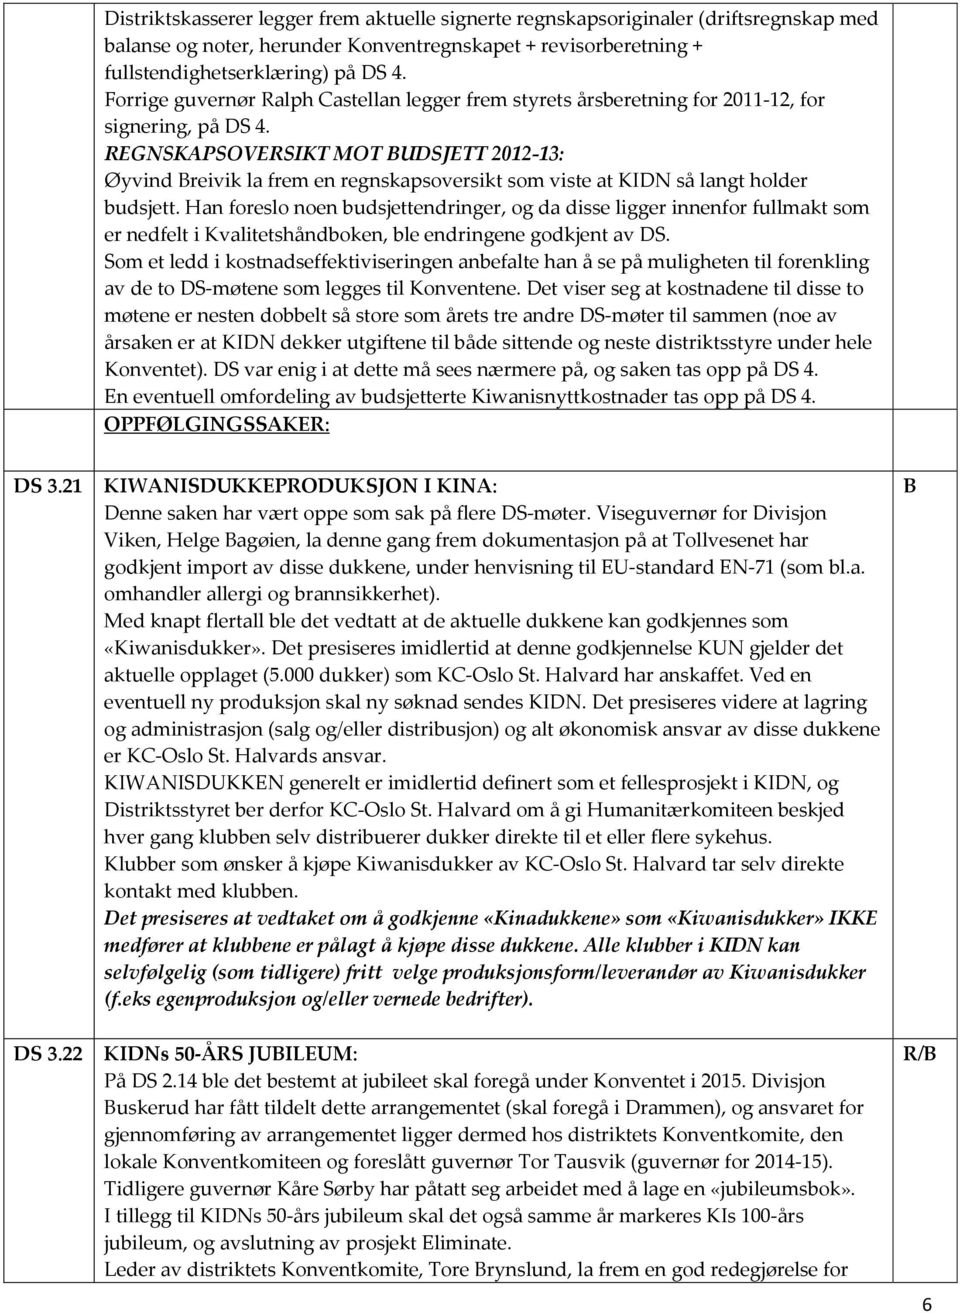 EGNSKAPSOVESIKT MOT UDSJETT 2012-13: Øyvind reivik la frem en regnskapsoversikt som viste at KIDN så langt holder budsjett.